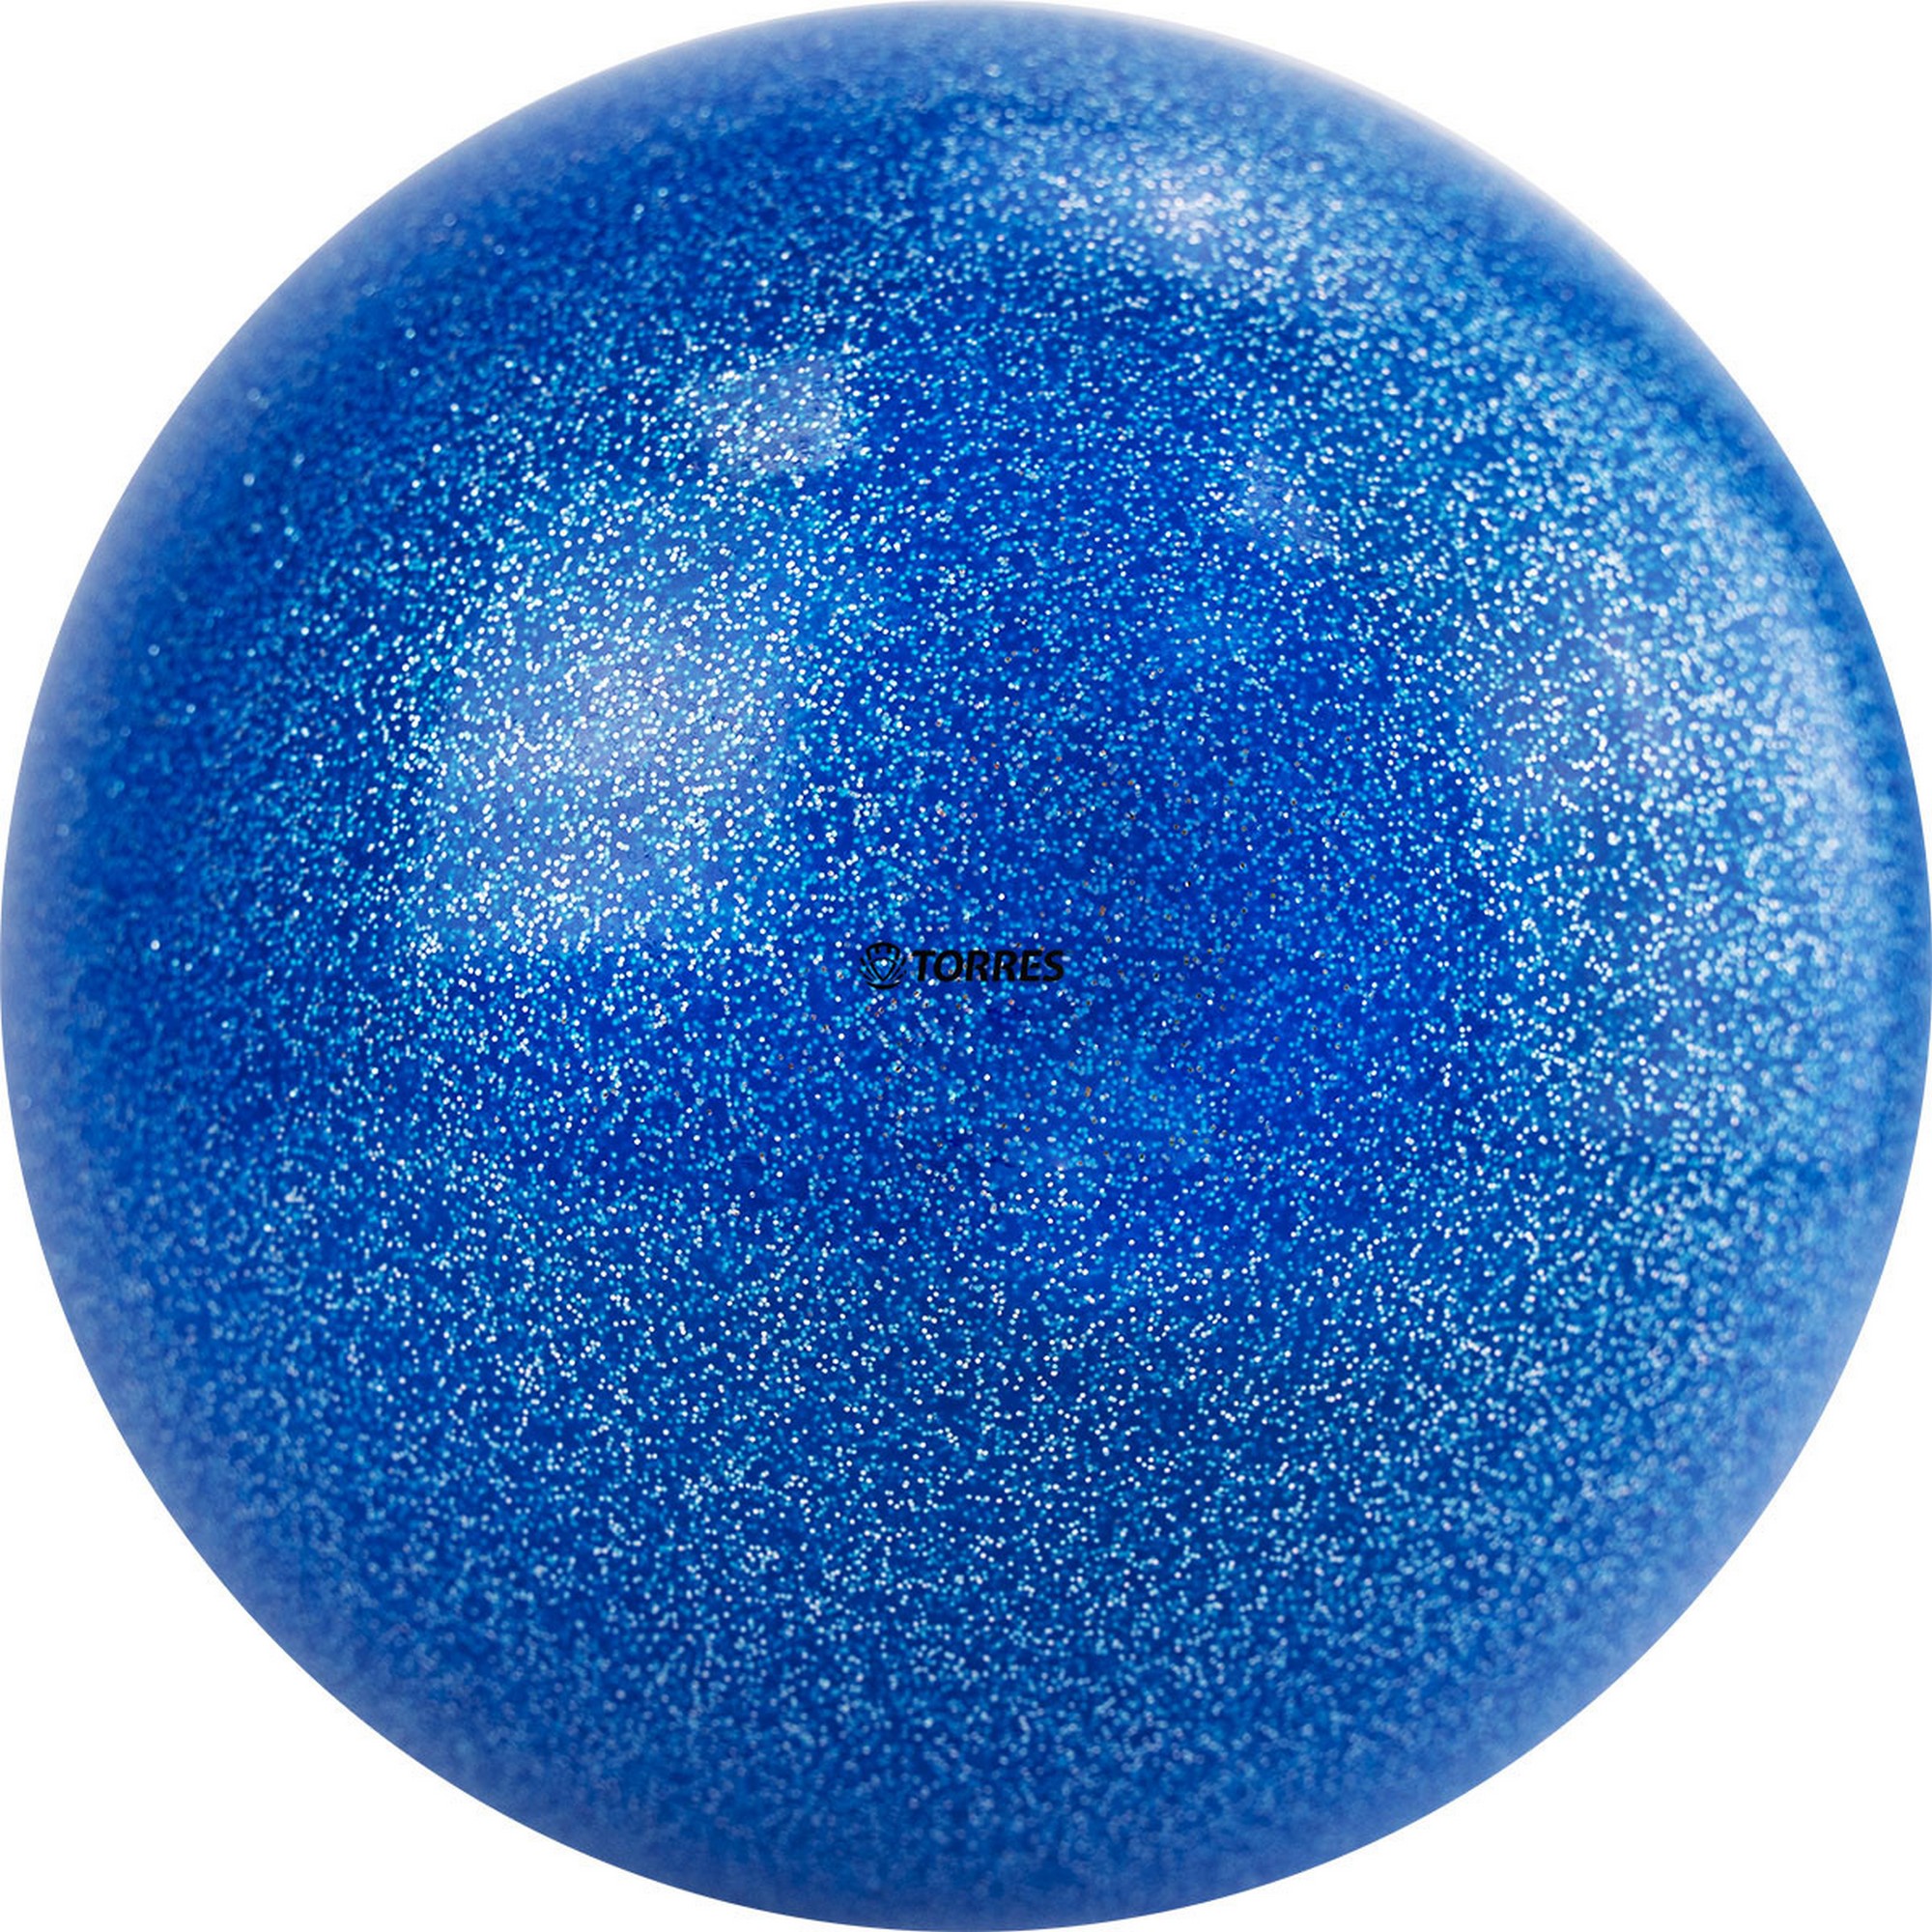 фото Мяч для художественной гимнастики d15см torres пвх agp-15-01 синий с блестками